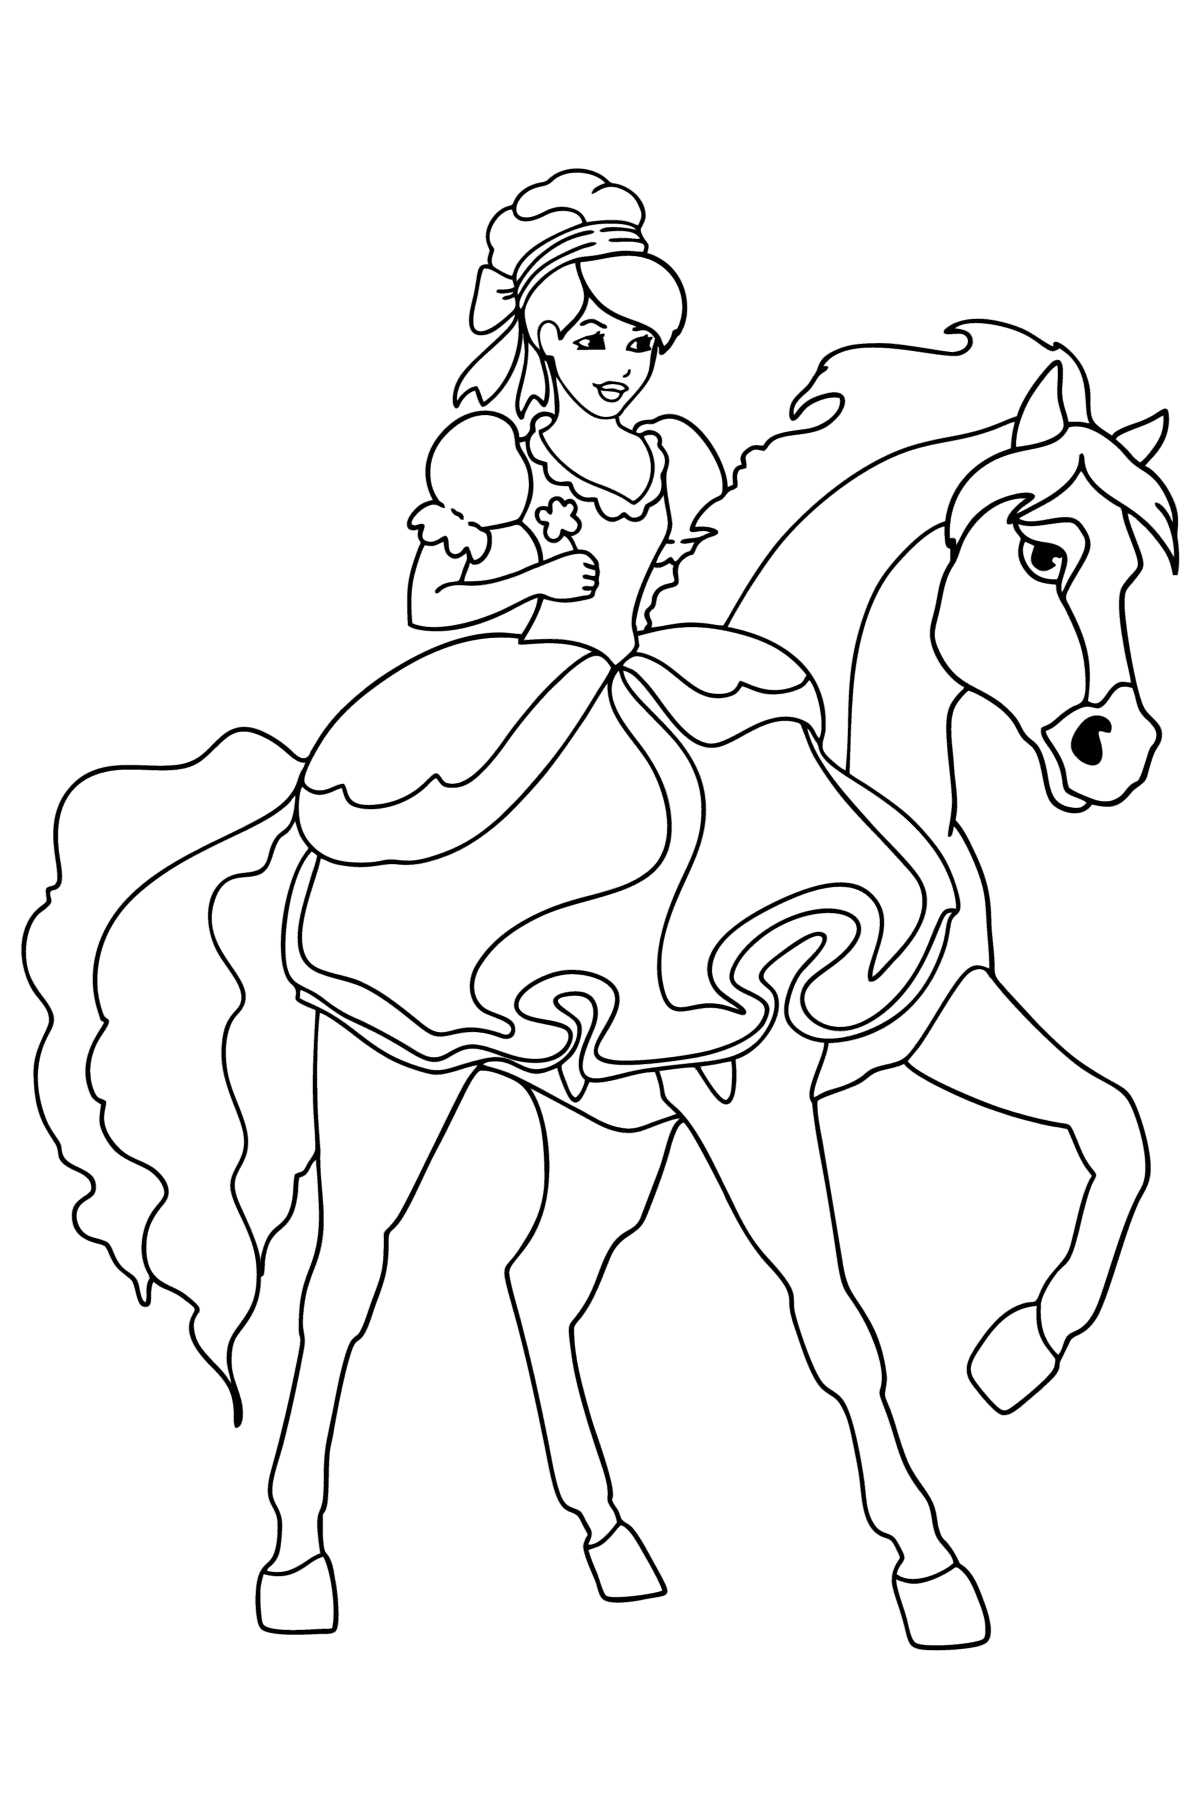 Kleurplaat Prinses te paard - kleurplaten voor kinderen